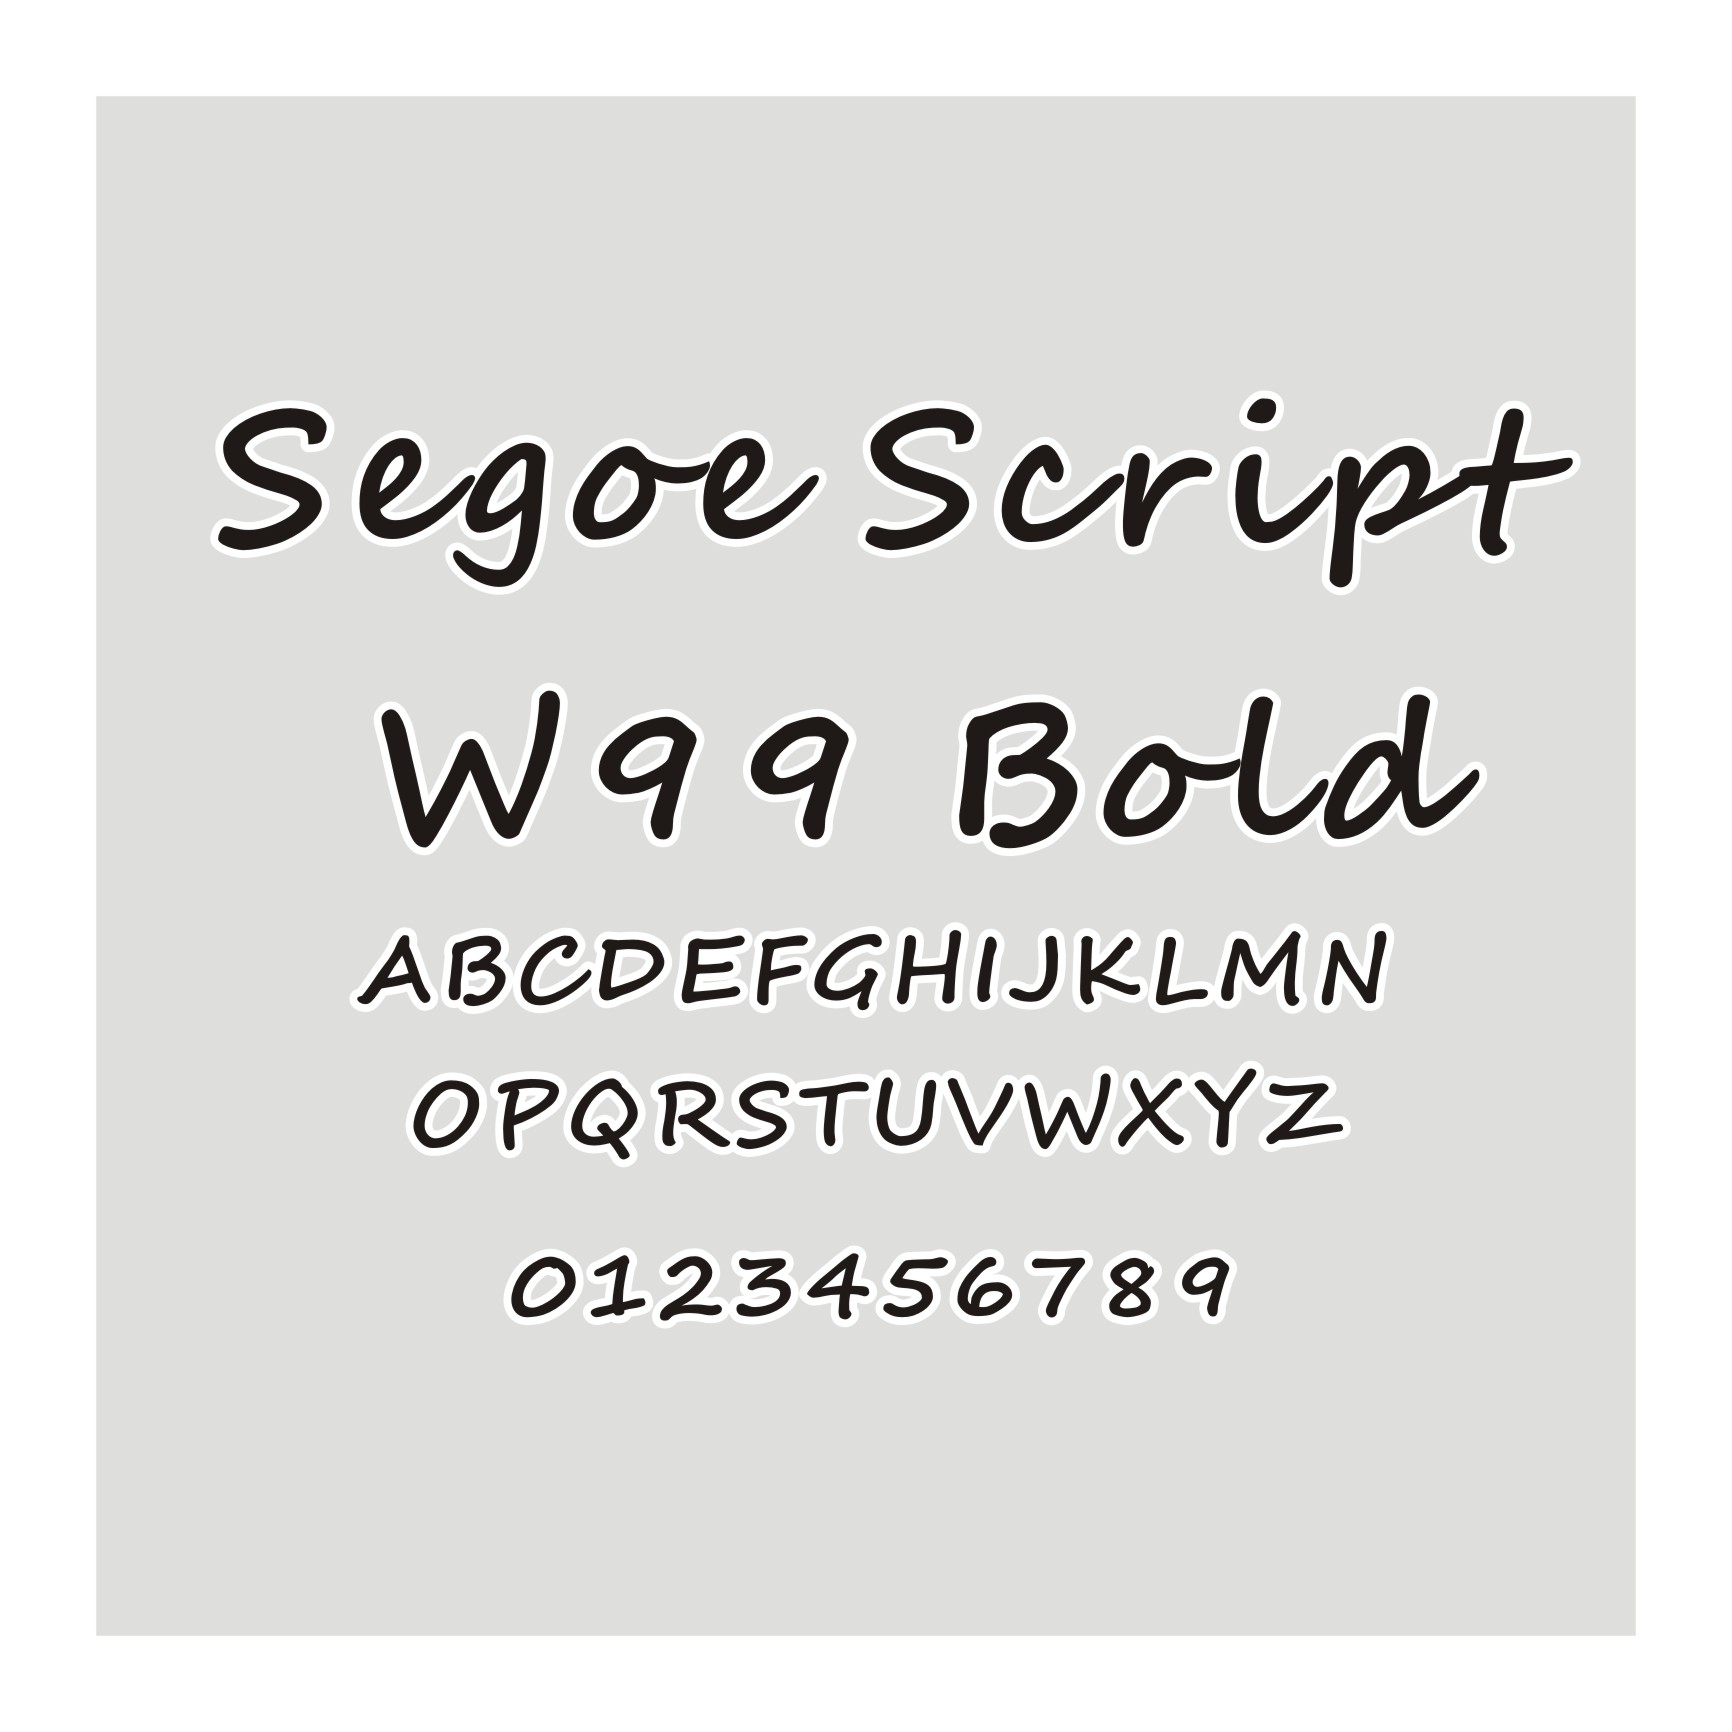 Segoe Script W99 Bol